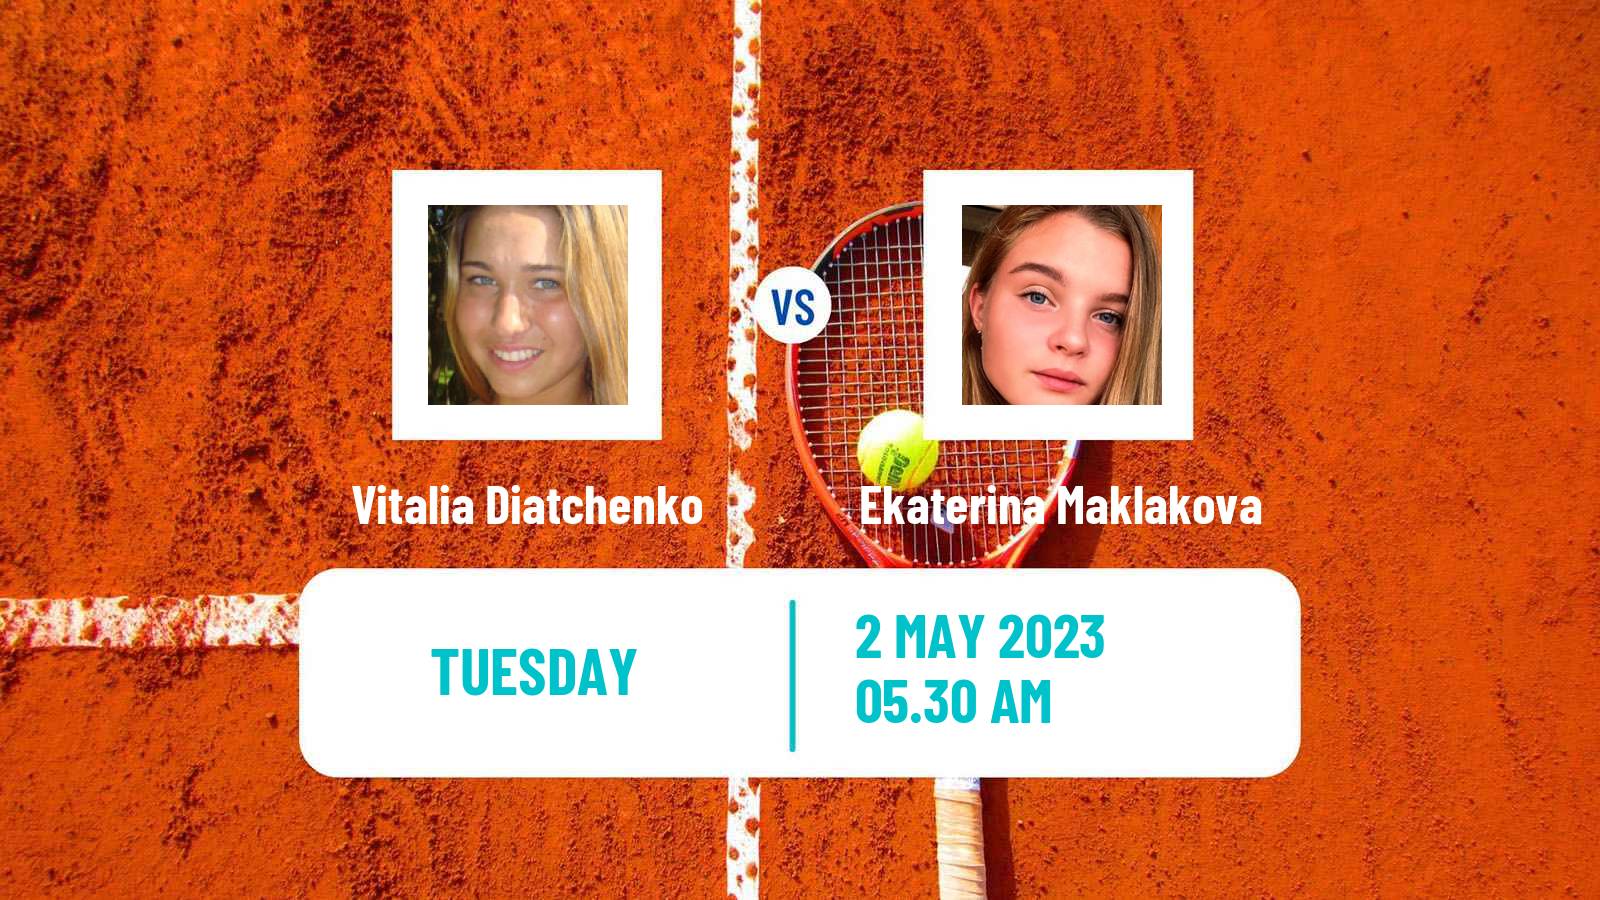 Tennis ITF Tournaments Vitalia Diatchenko - Ekaterina Maklakova